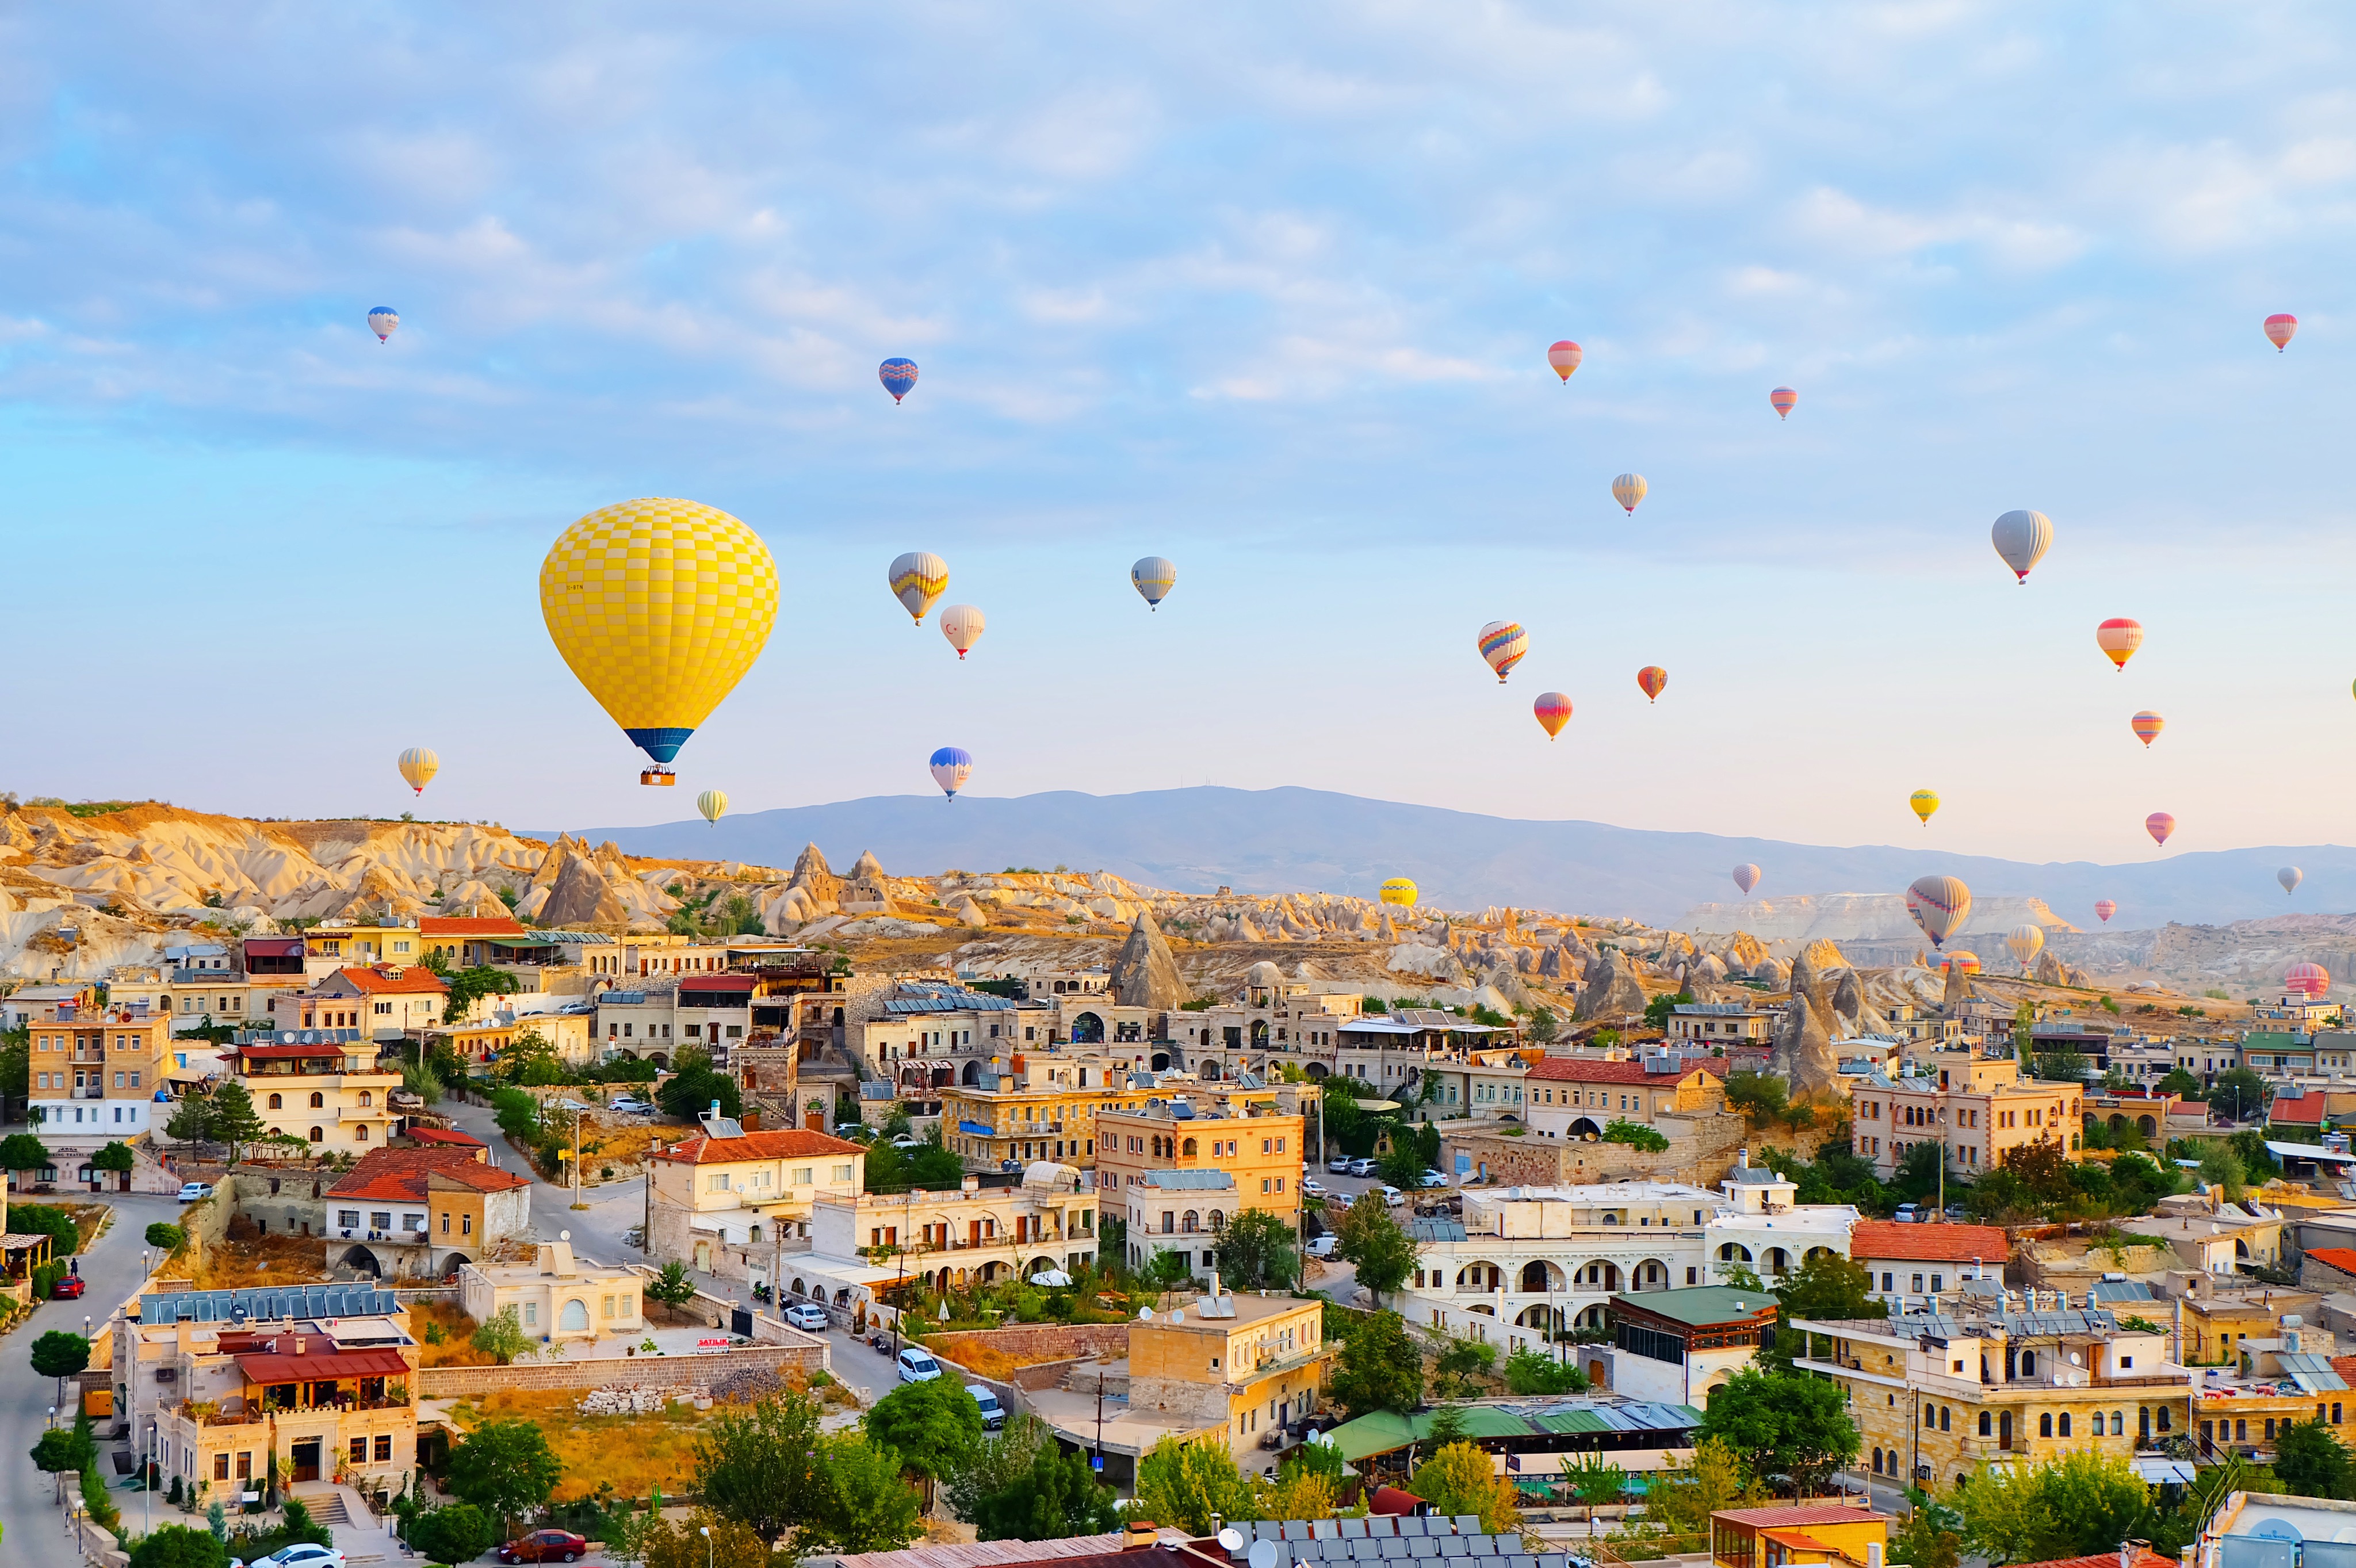 卡帕多奇亚,坐热气球和太阳一起升起,才知道土耳其到底有多浪漫